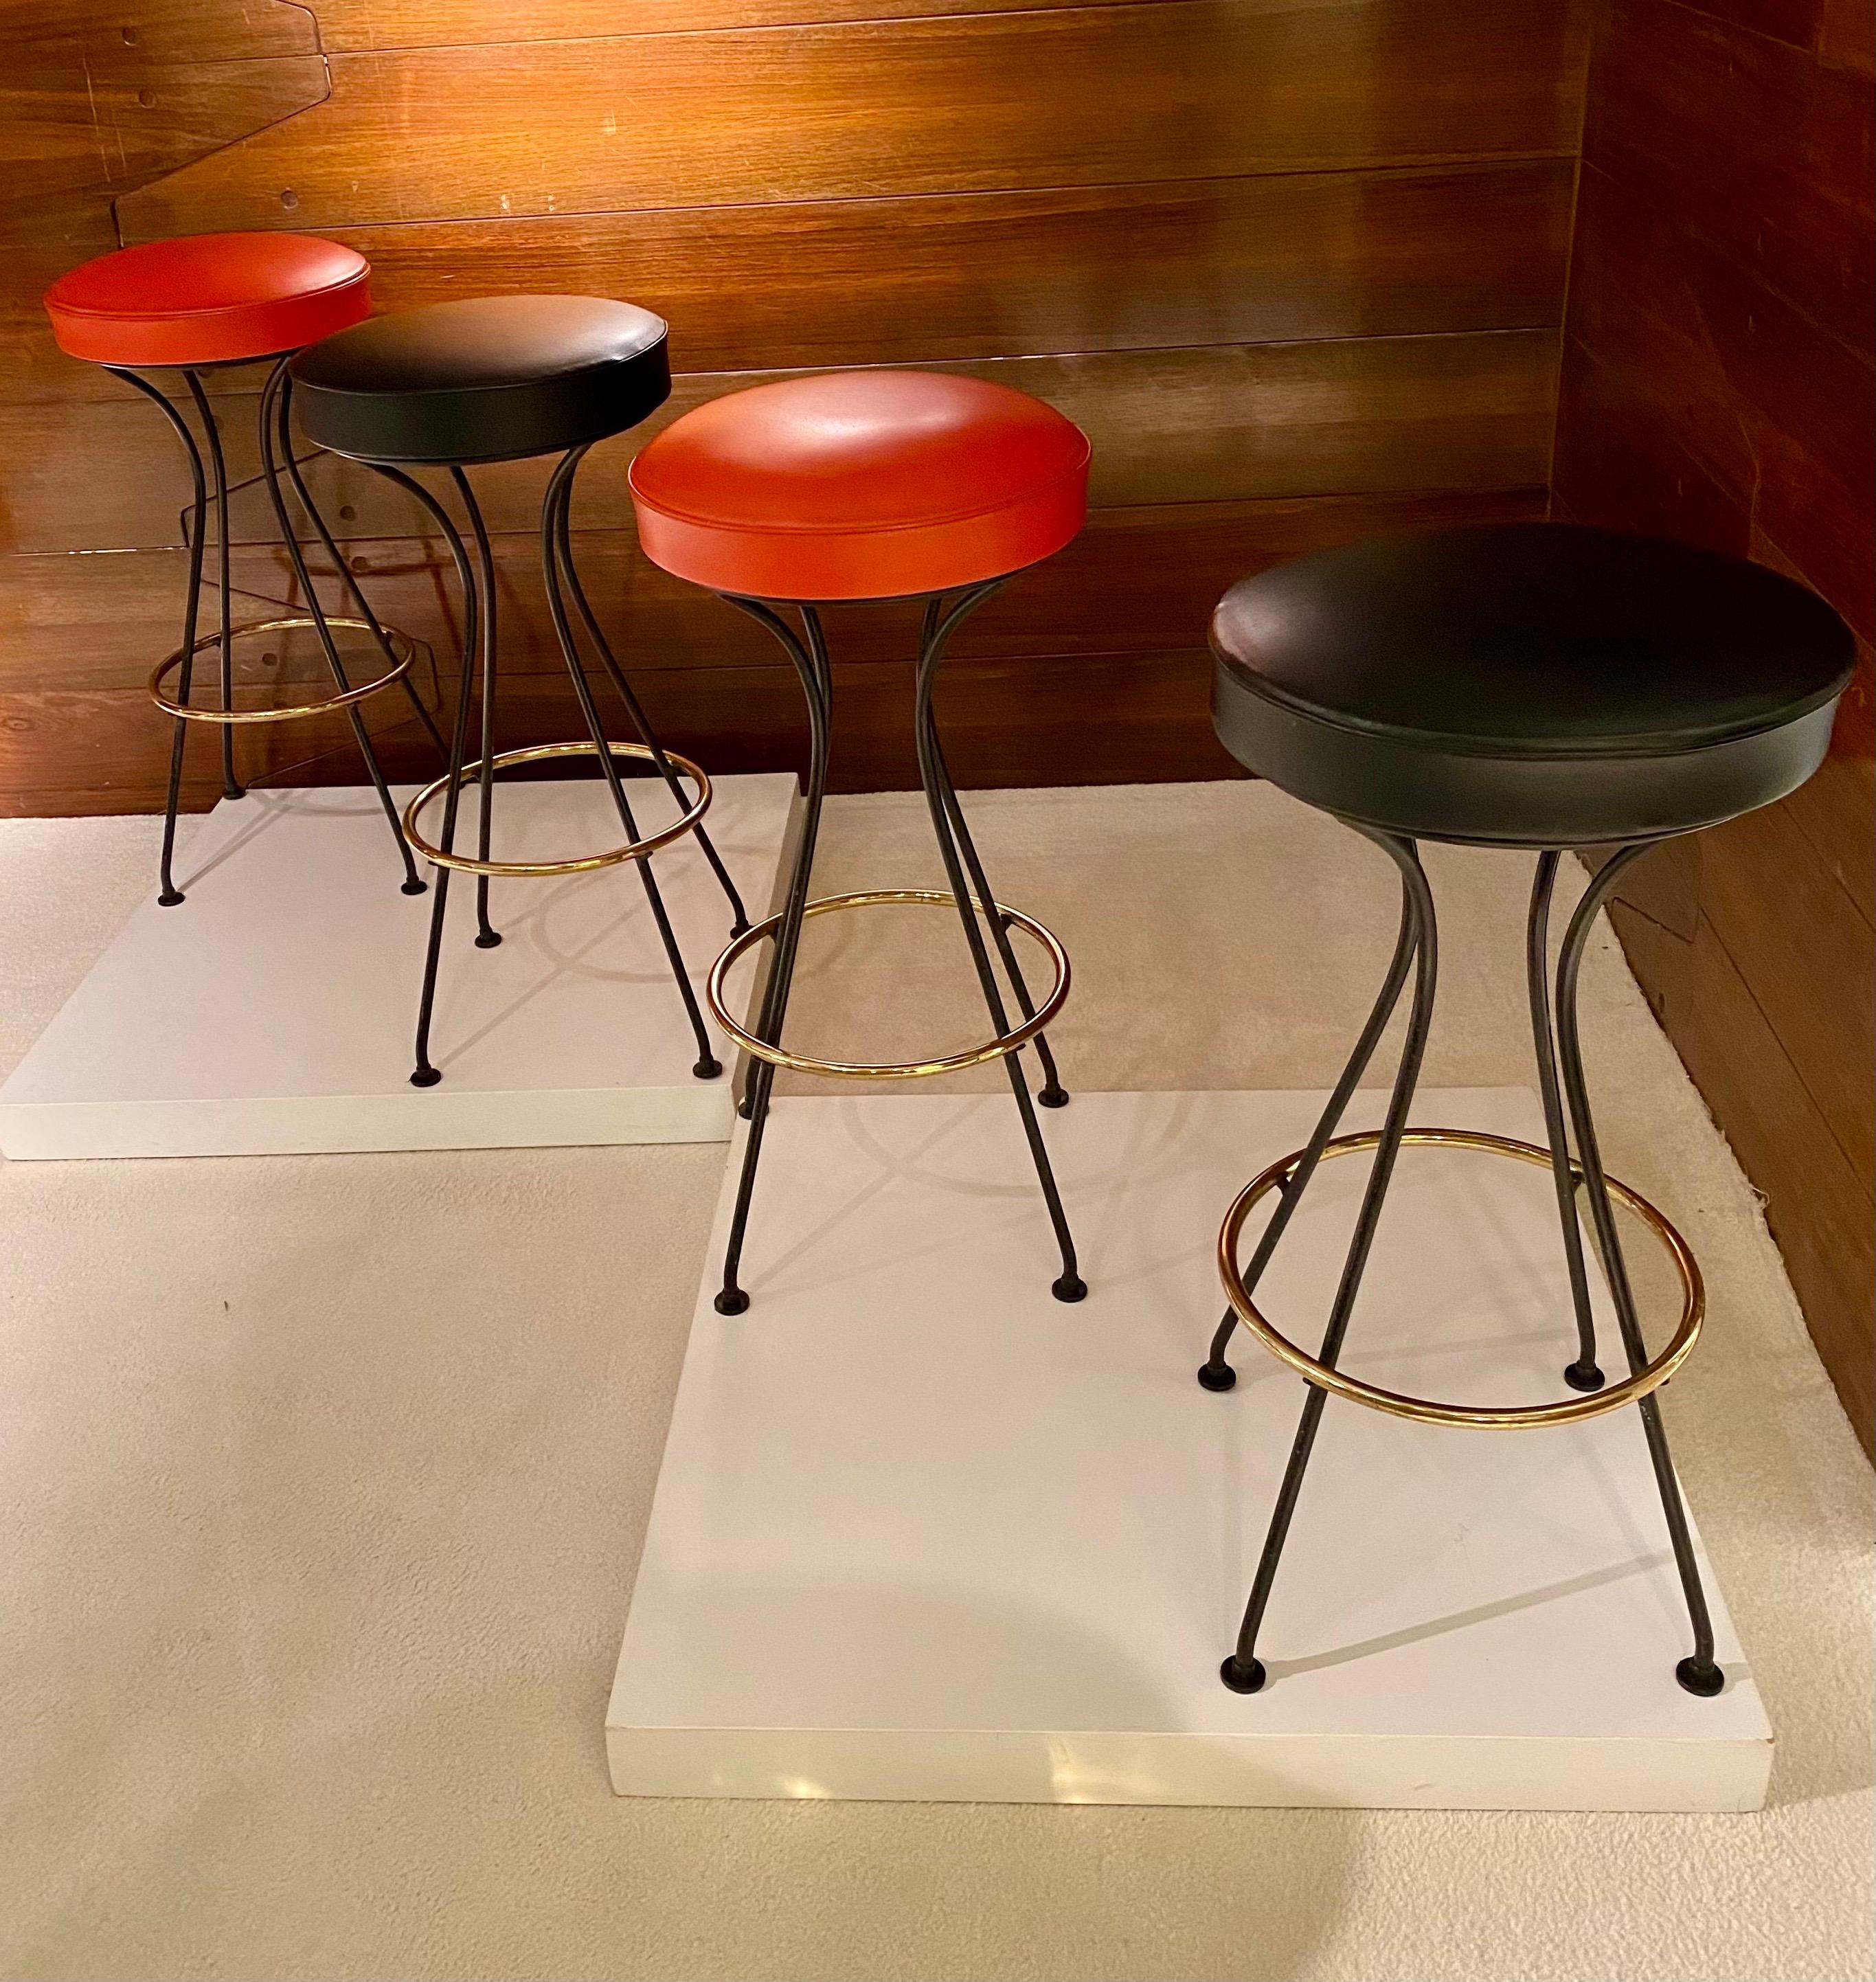 Quatre tabourets de bar, France années 1950.
Tabouret en métal laqué noir et laiton, siège orange et noir en simili cuir original.